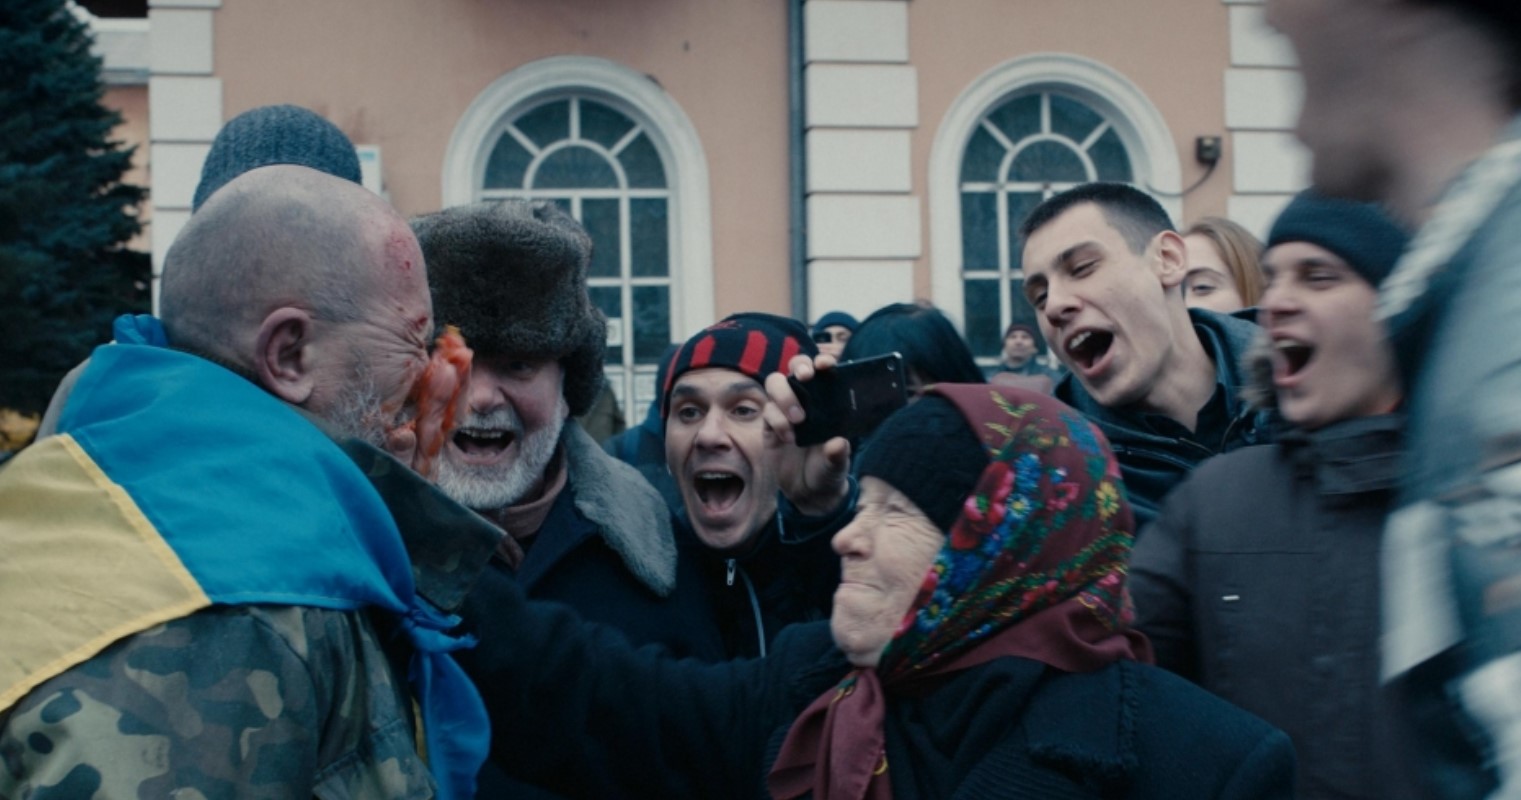 кадр из фильма "Донбасс" 2018